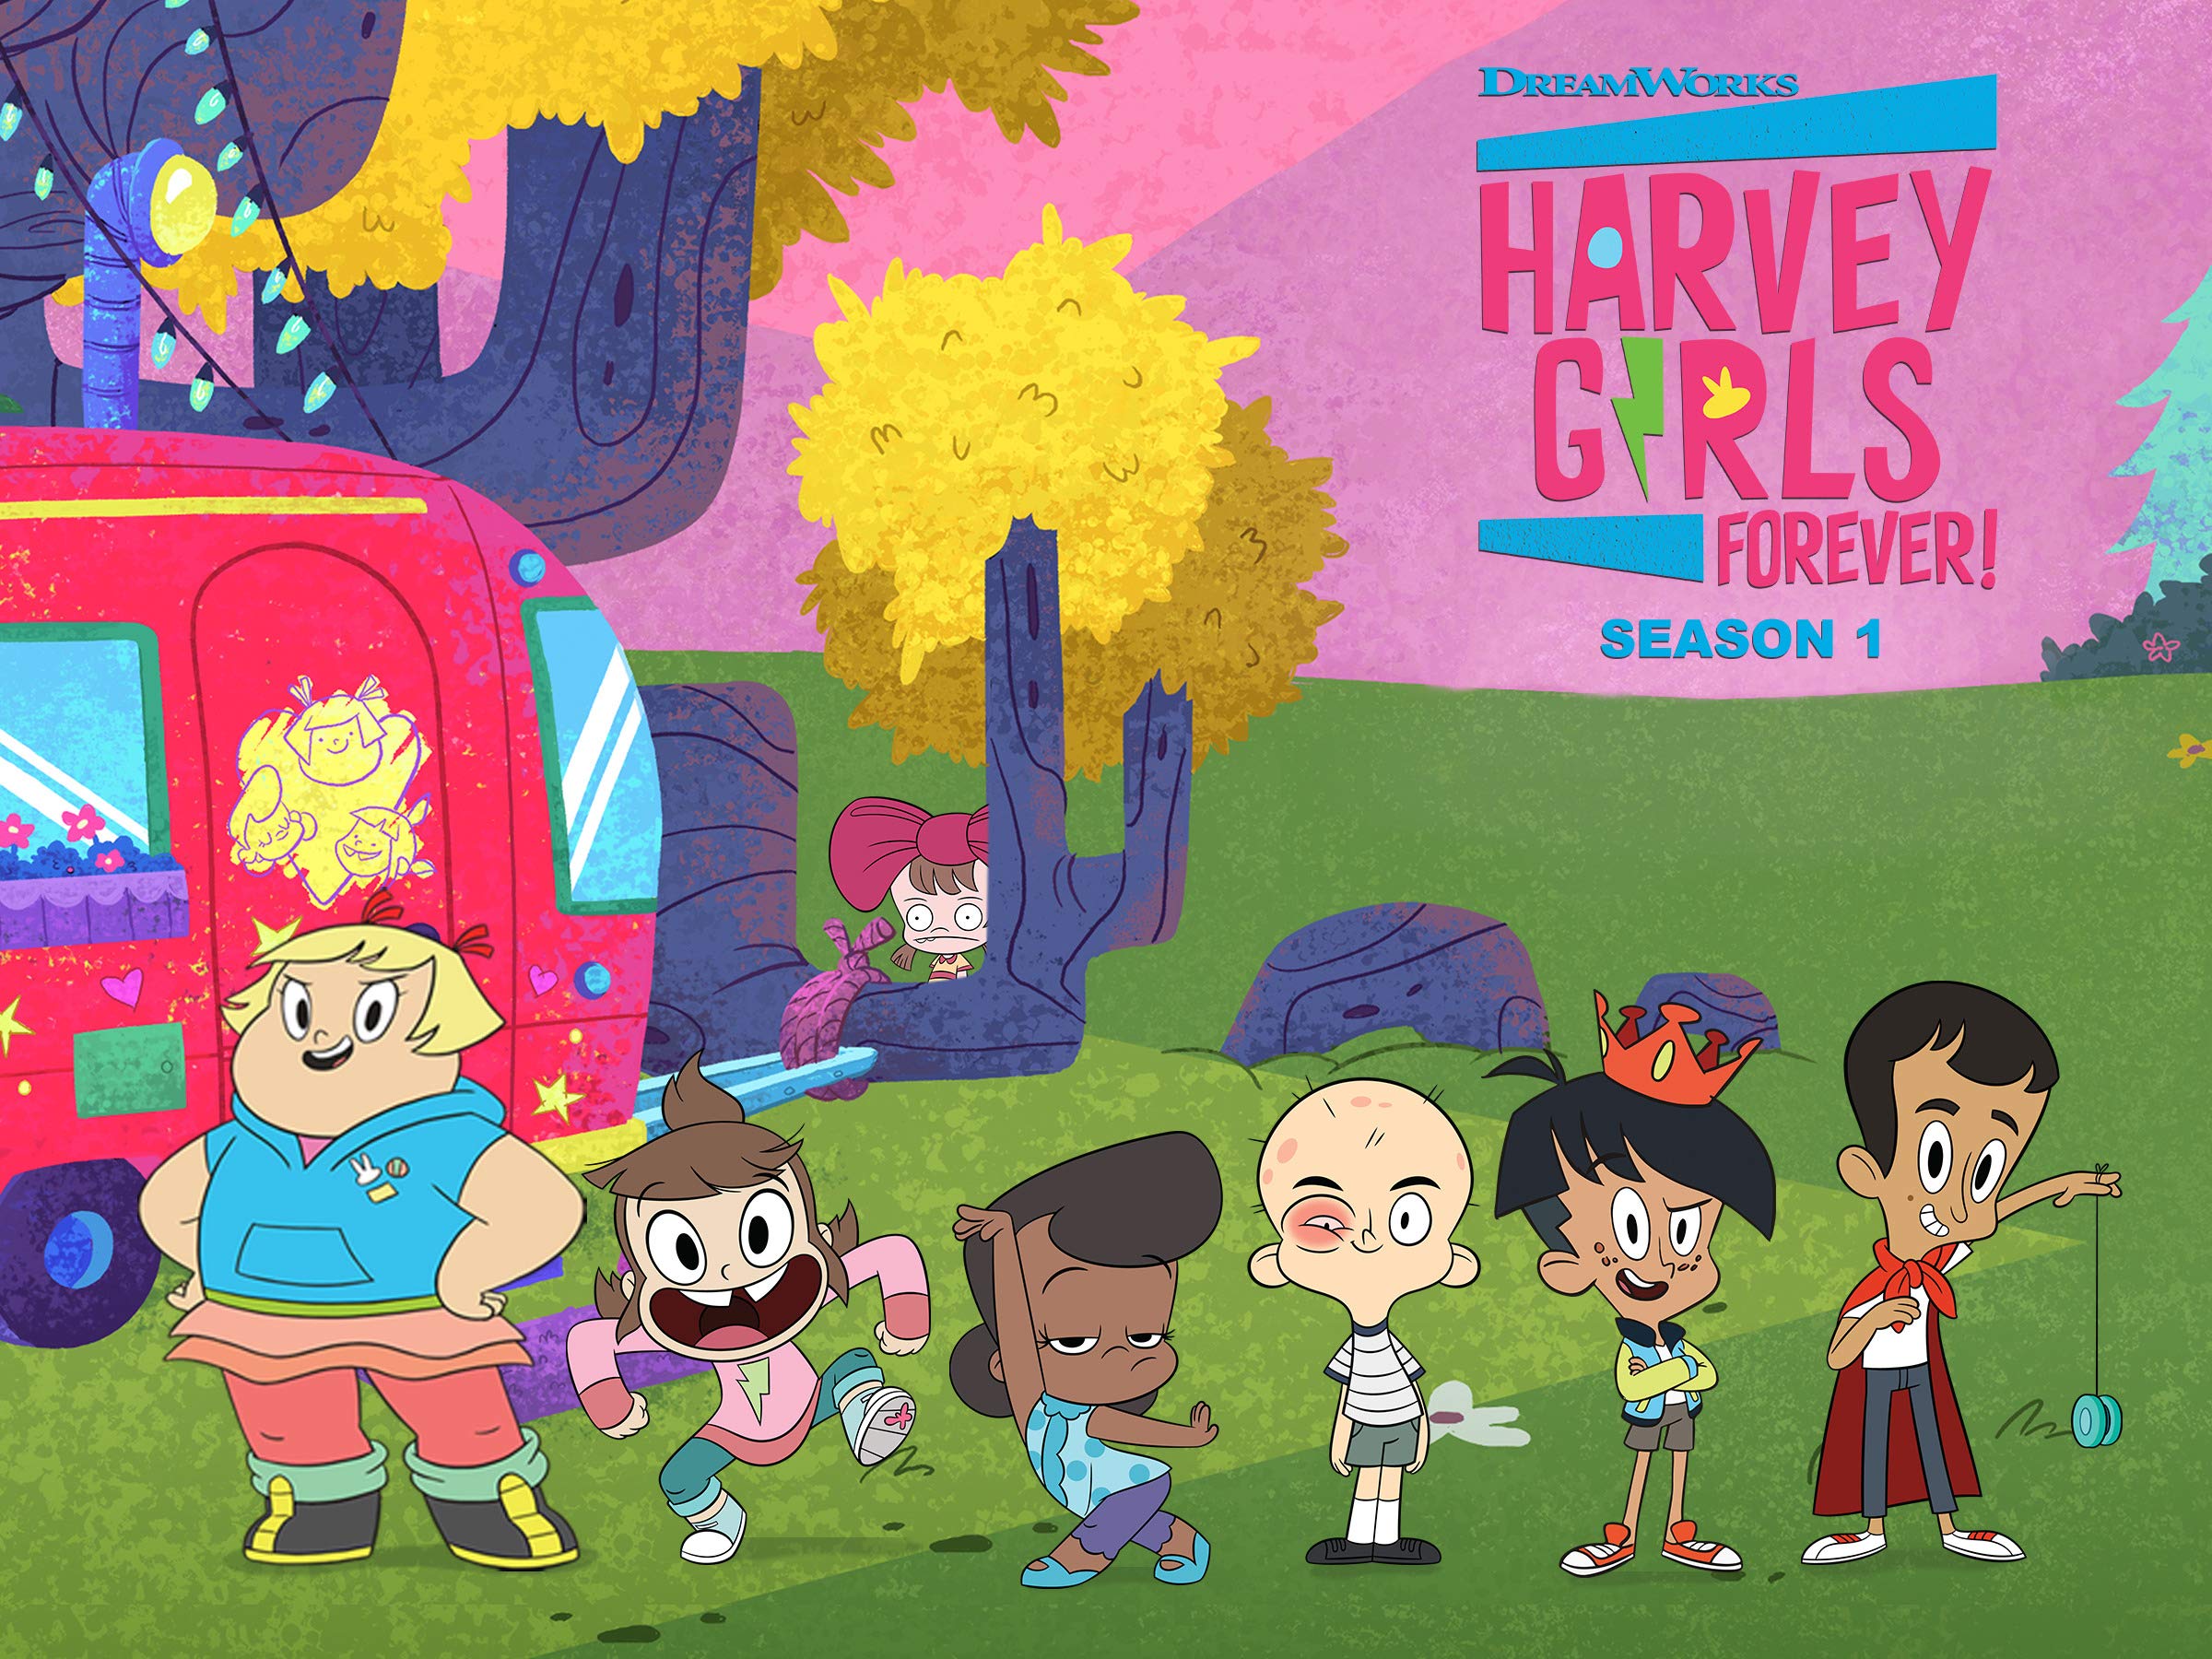 Harvey Girls Forever!, Season 1